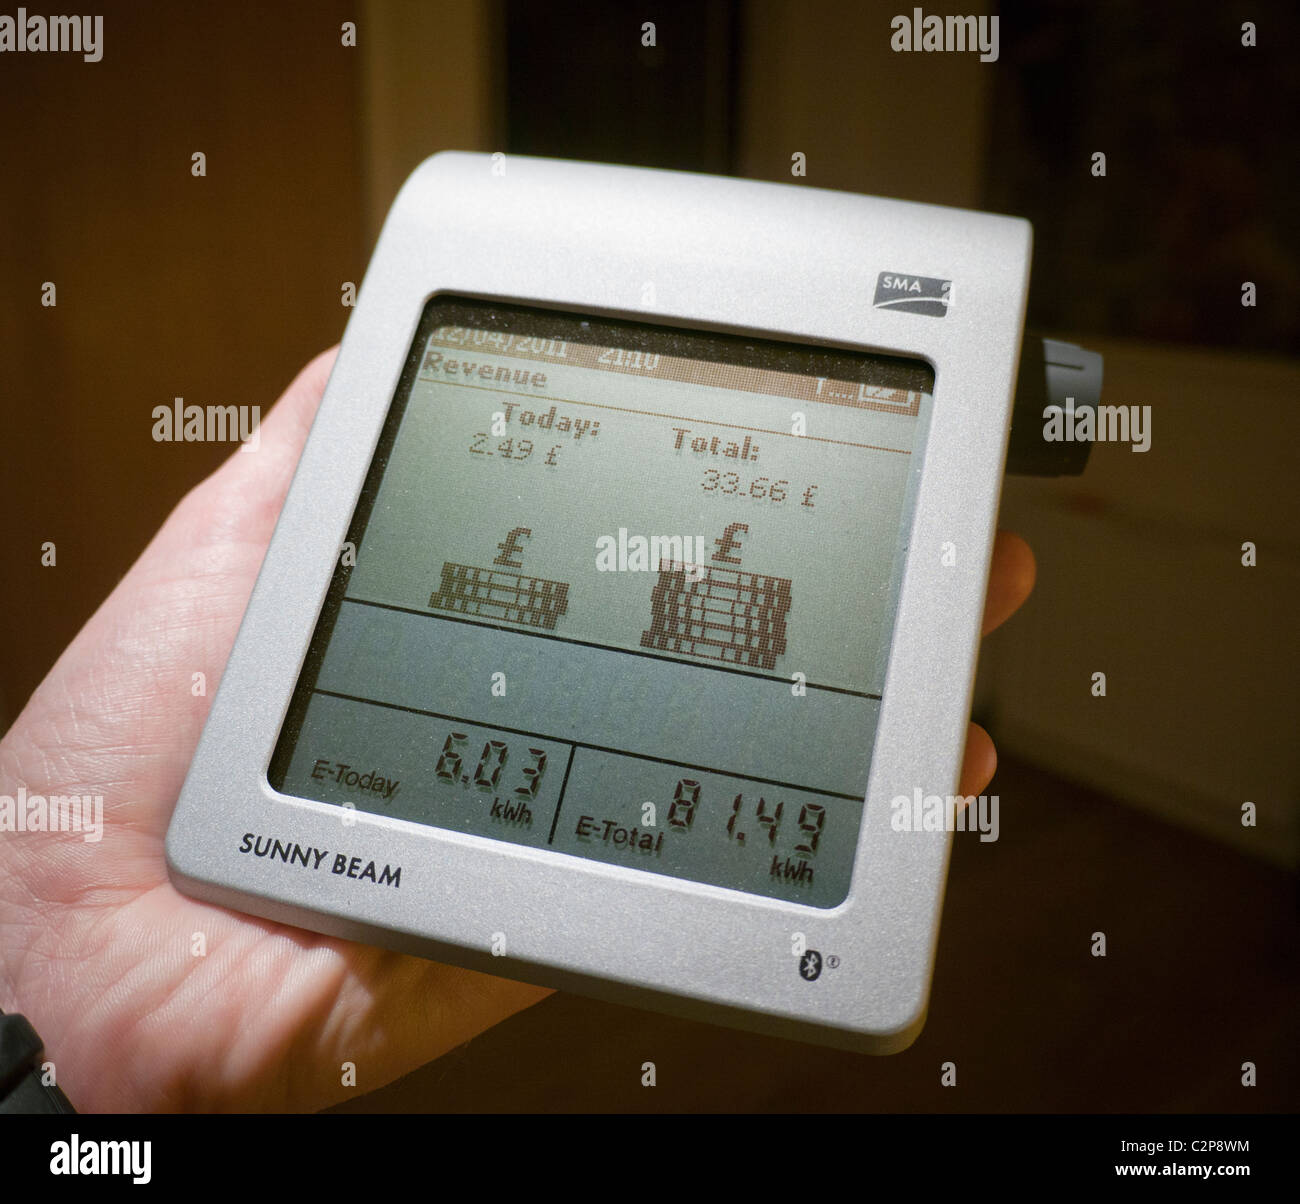 Una mano misuratore wireless che mostra le entrate da una giornata di sole per il feed-in tariffa di un utilizzatore di elettricità nel Regno Unito Foto Stock